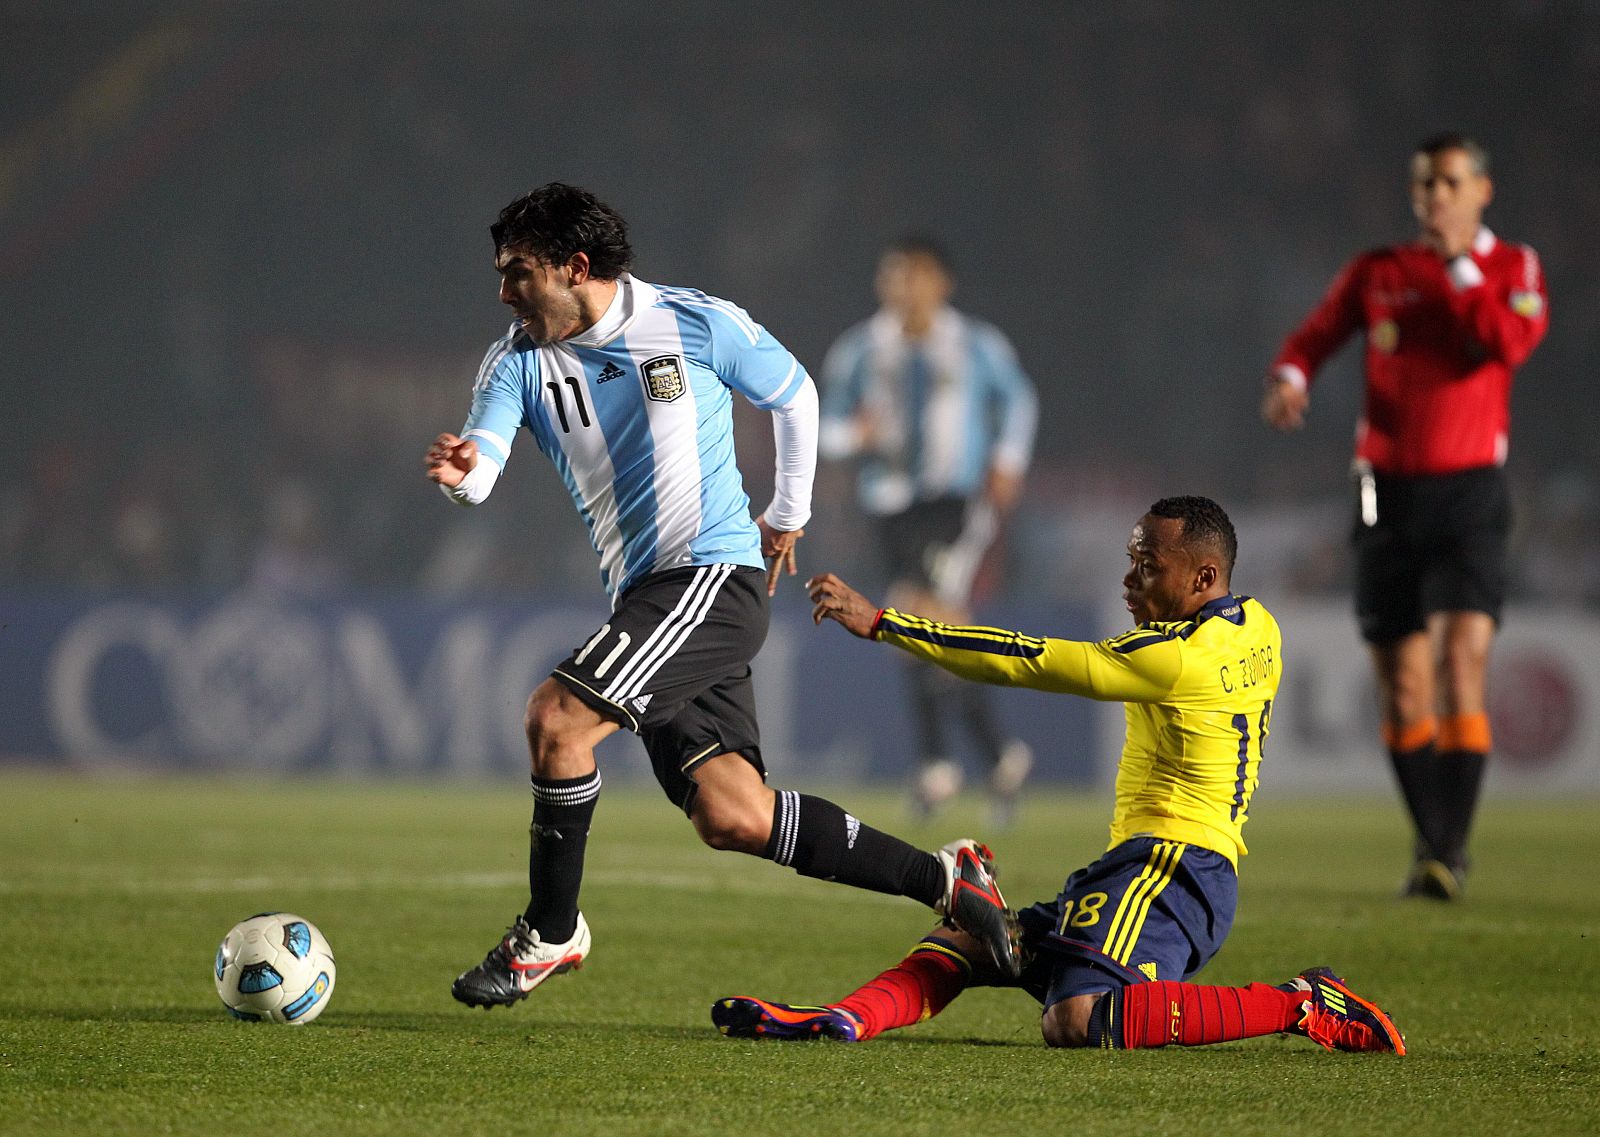 El jugador de la selección de Argentina de fútbol Carlos Tévez (izq) disputa el balón durante un partido de la segunda jornada del grupo A de la Copa América Argentina 2011